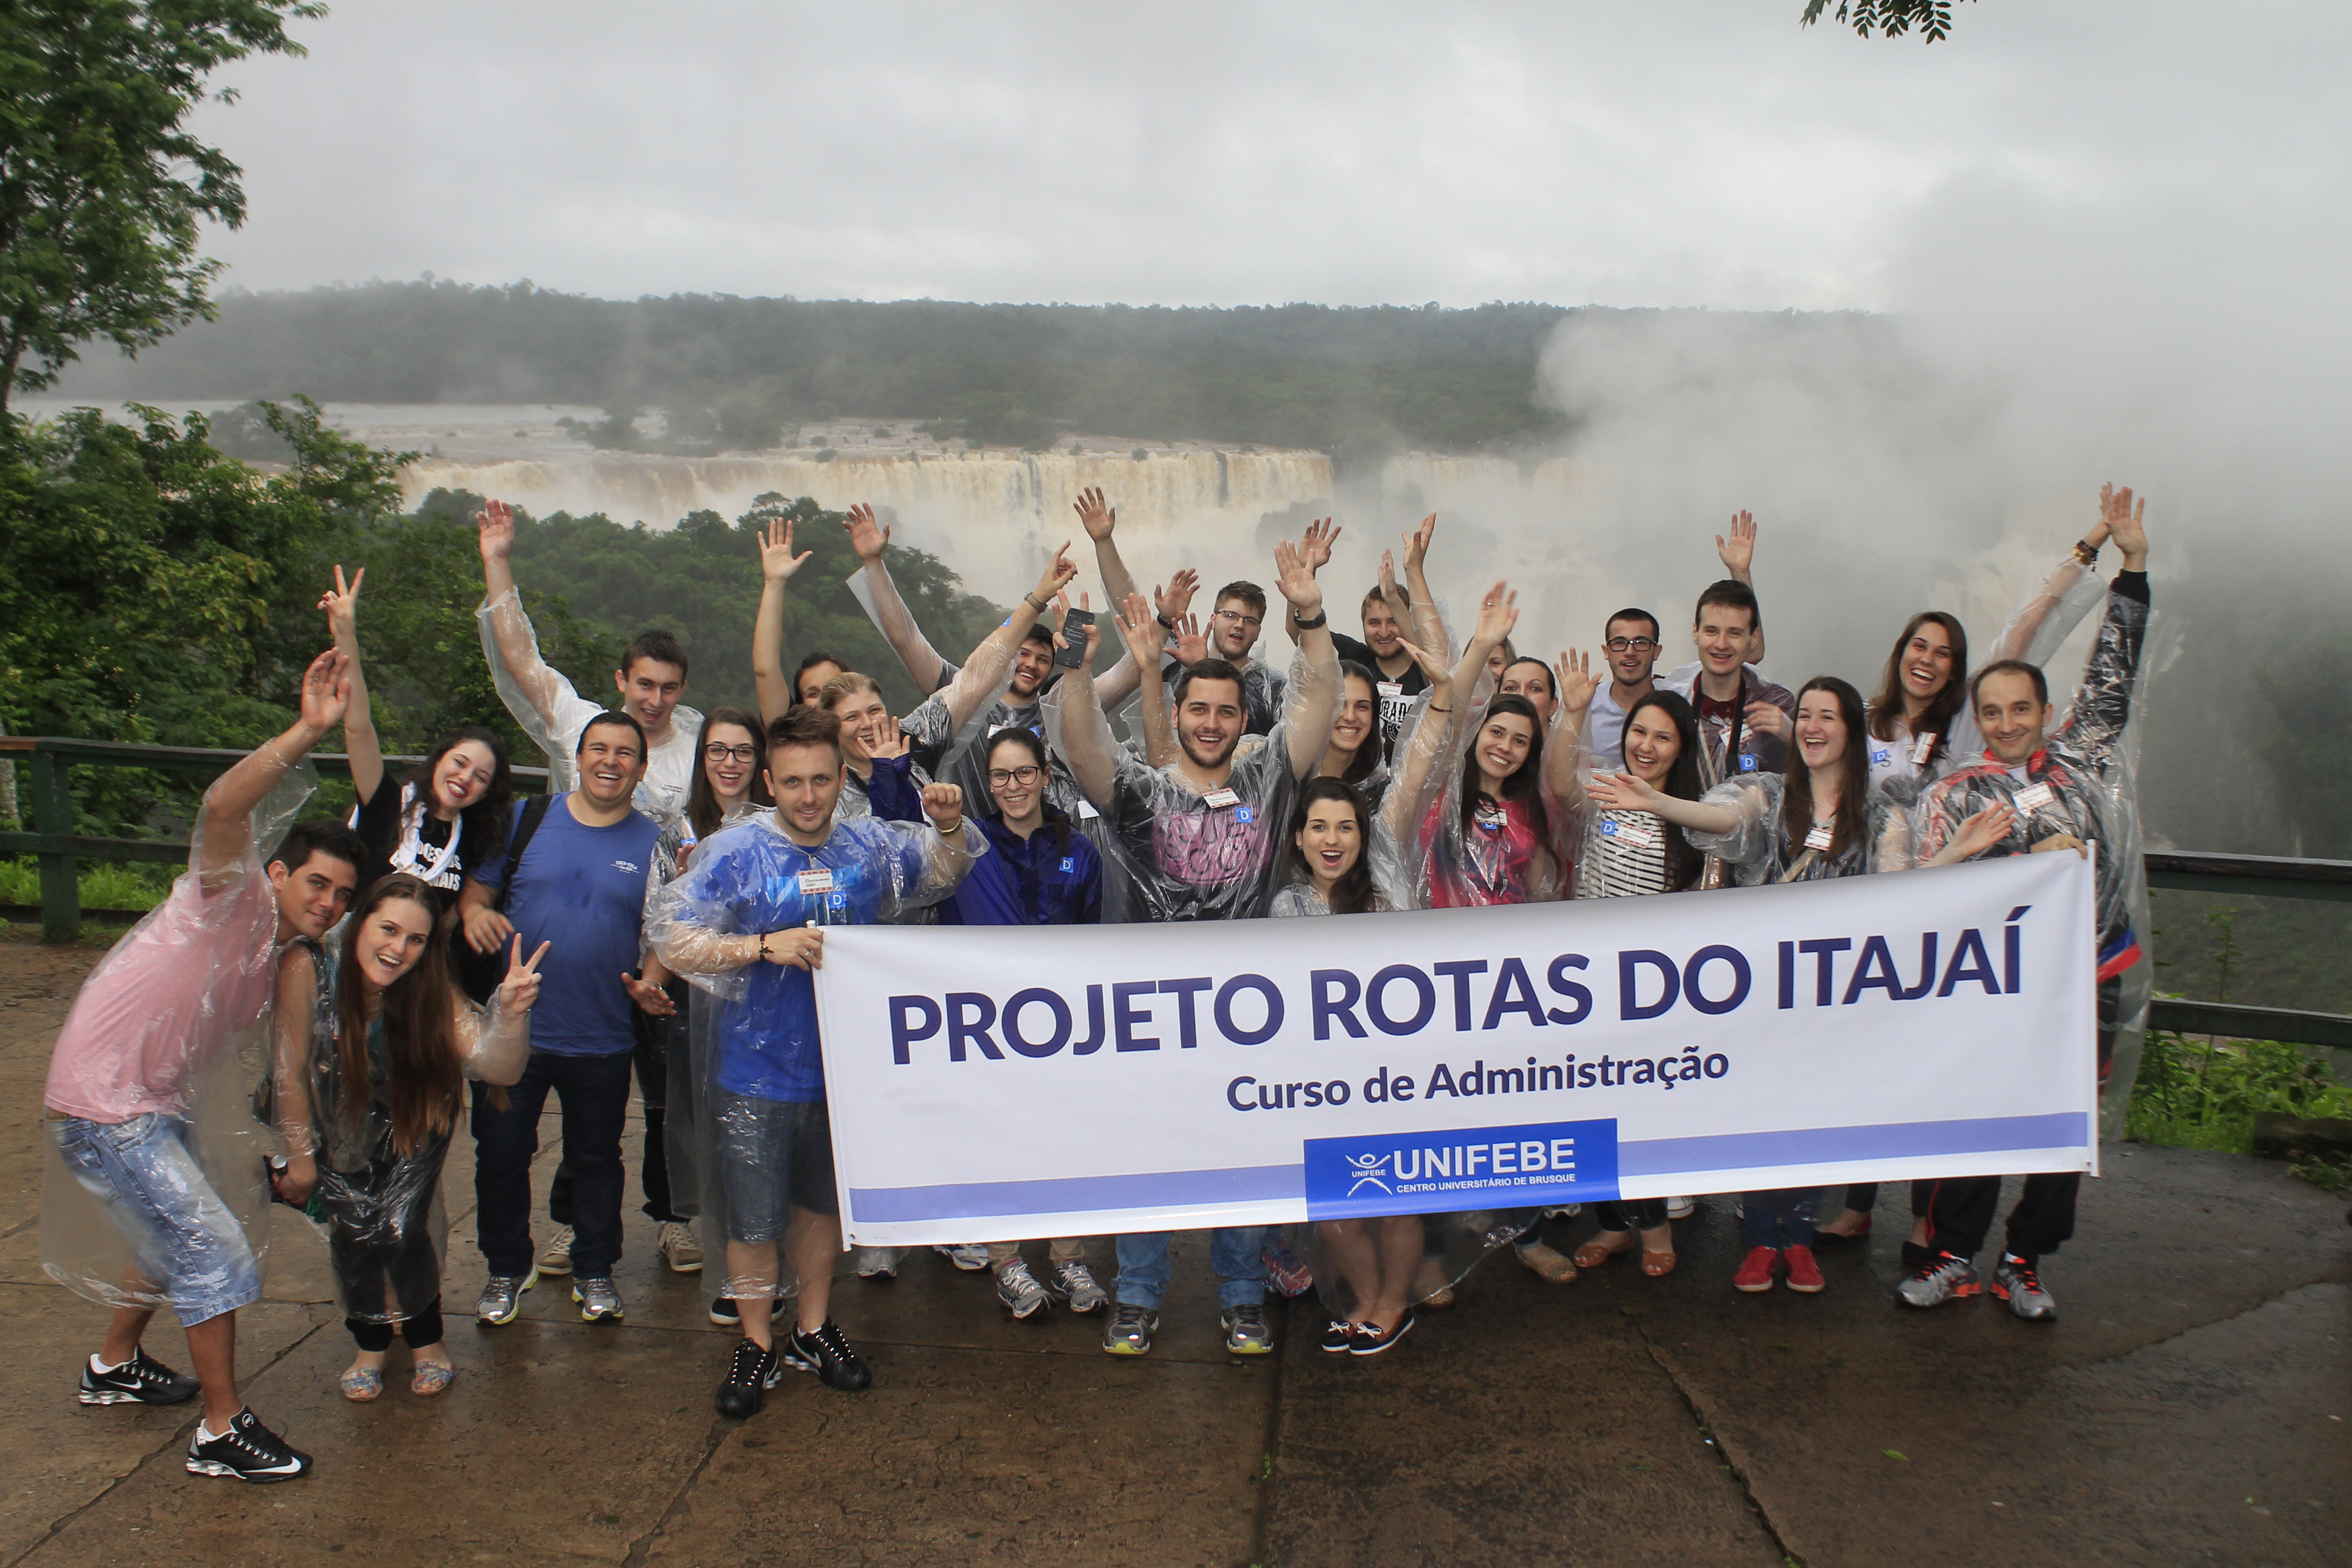 Projeto “Rotas do Itajaí” chega a Foz do Iguaçu com dia cheio de atividades